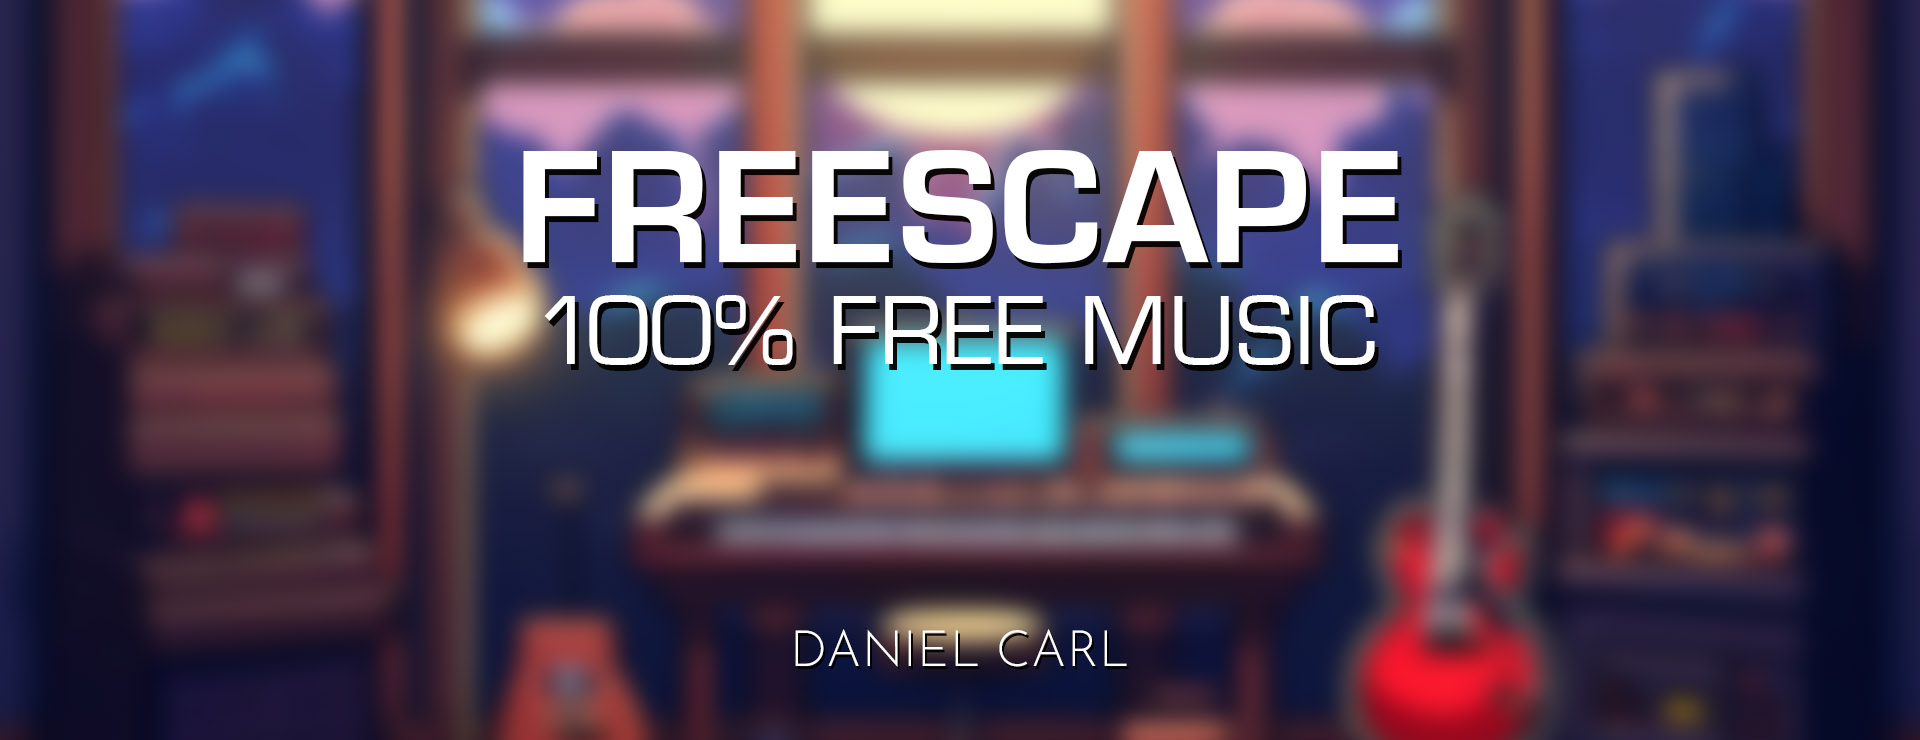 Freescape - 100% Free Music